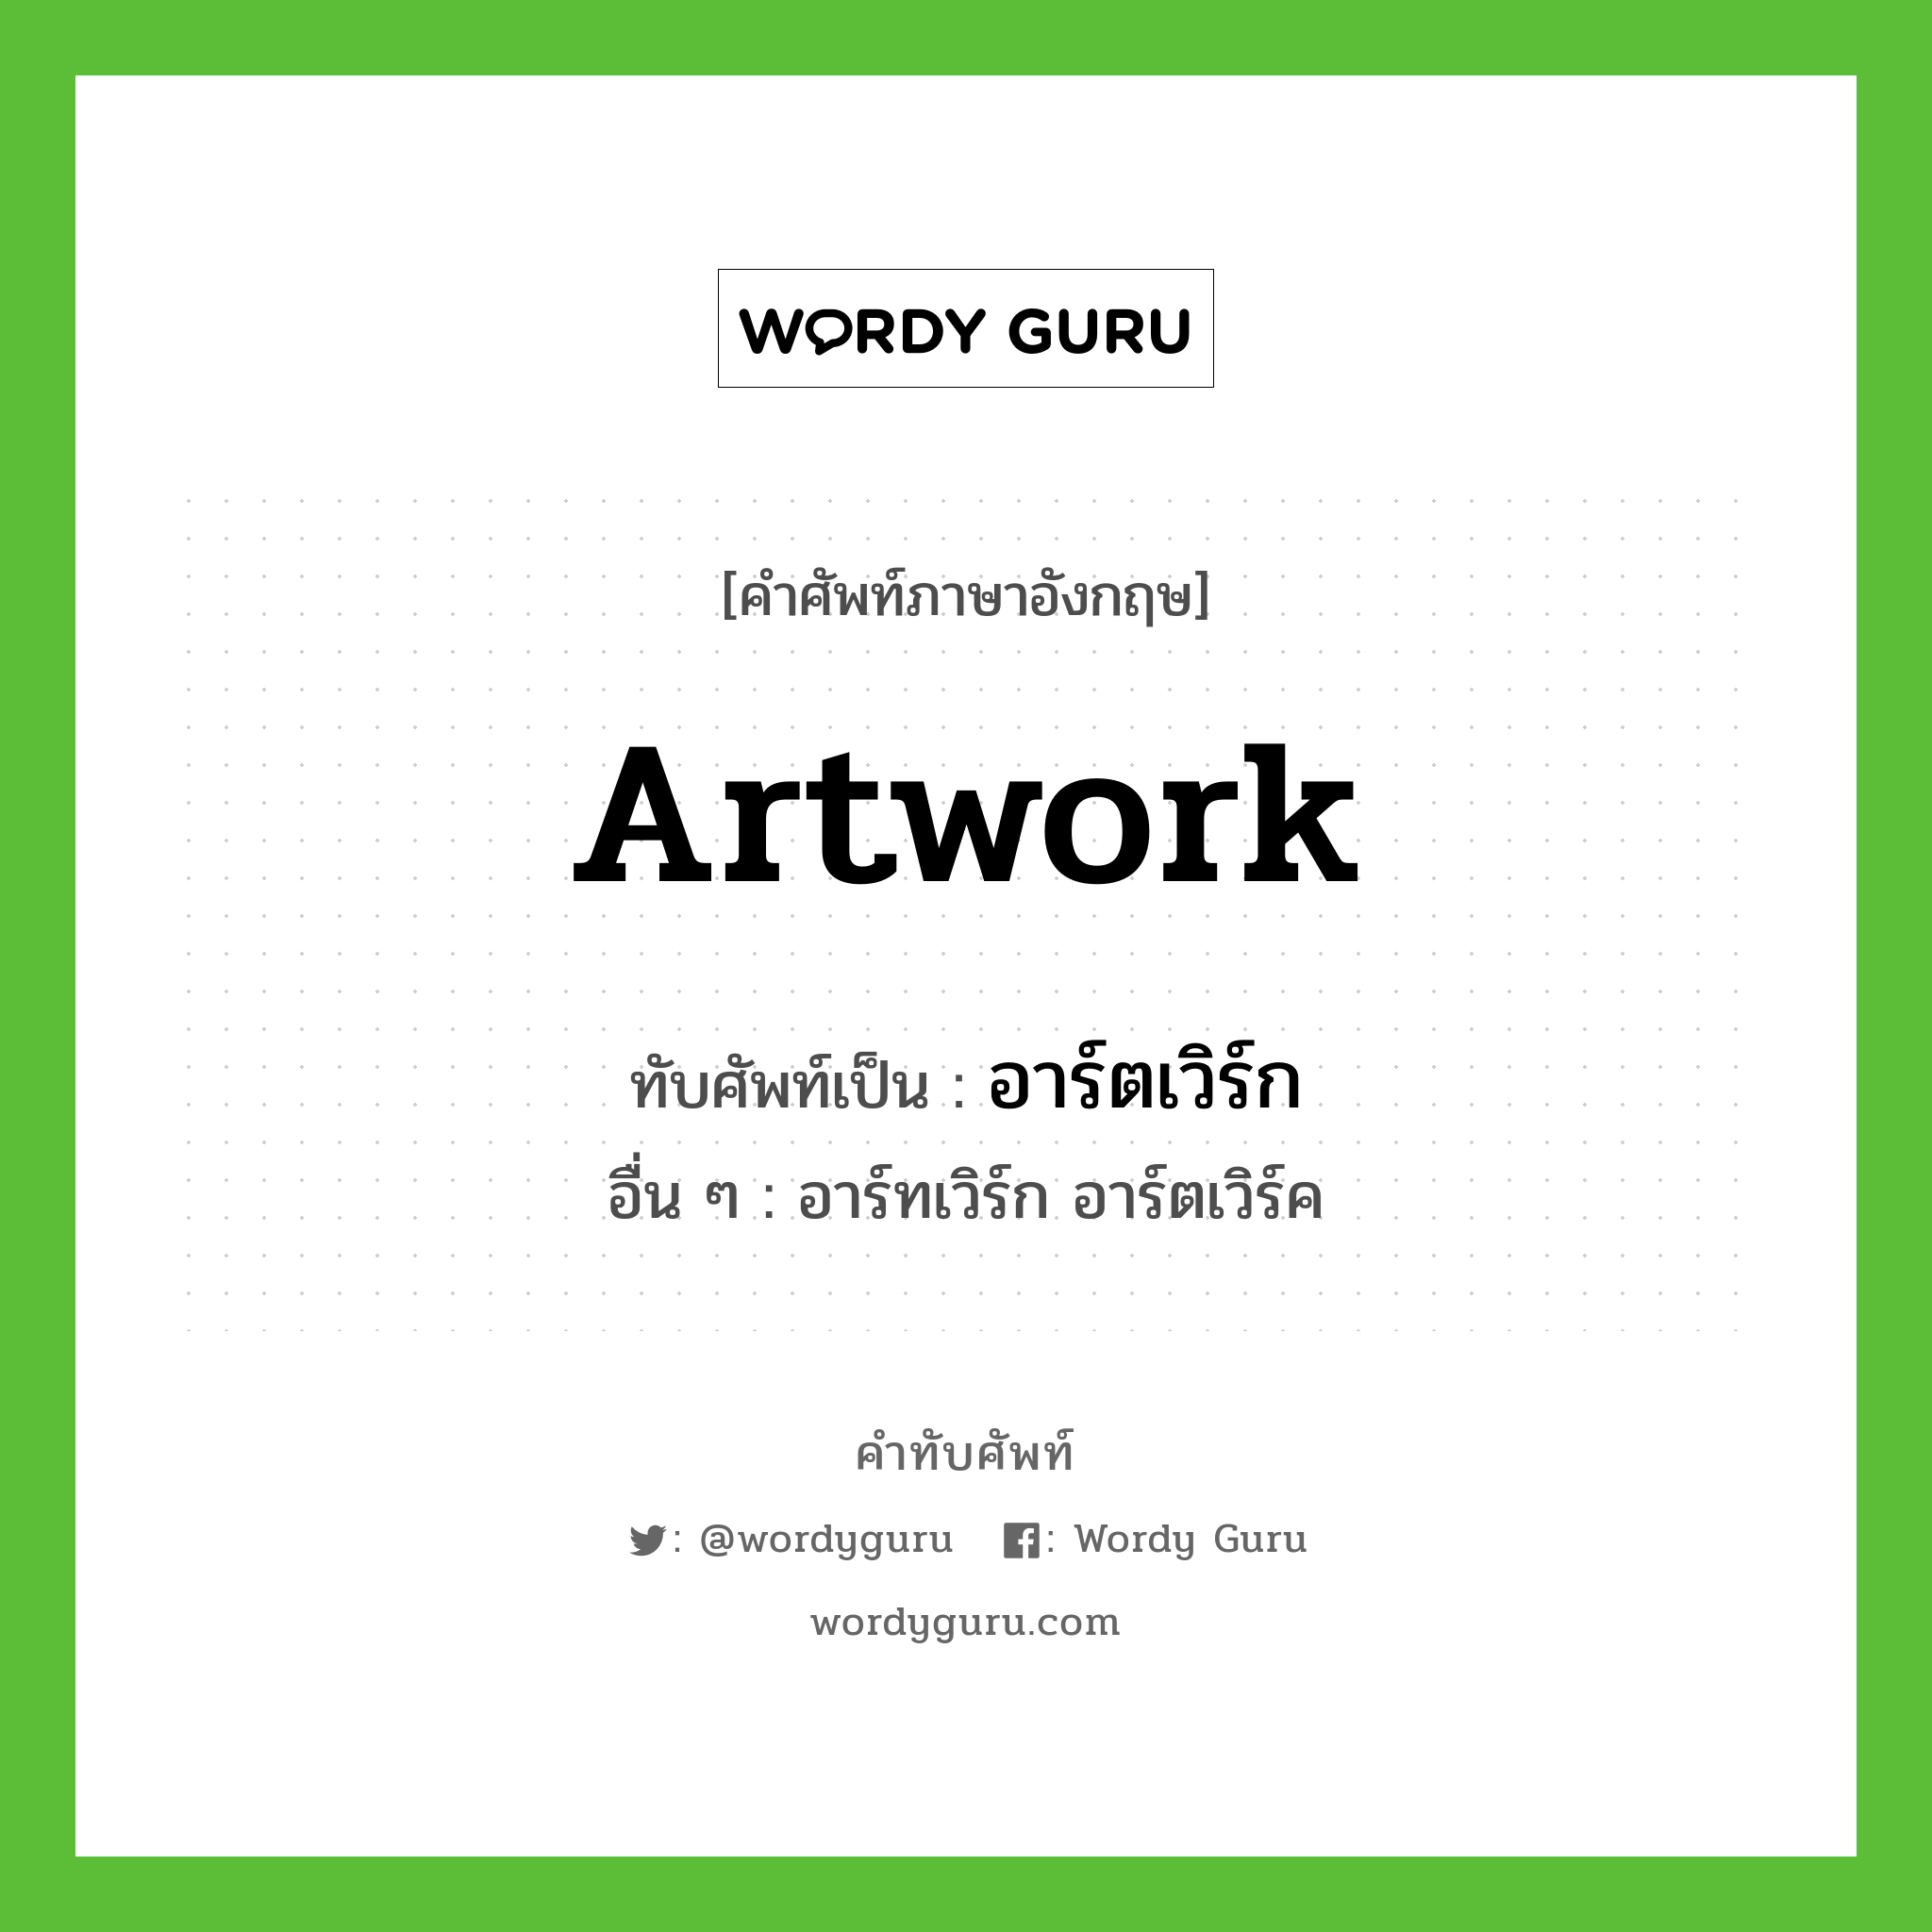 artwork เขียนเป็นคำไทยว่าอะไร?, คำศัพท์ภาษาอังกฤษ artwork ทับศัพท์เป็น อาร์ตเวิร์ก อื่น ๆ อาร์ทเวิร์ก อาร์ตเวิร์ค